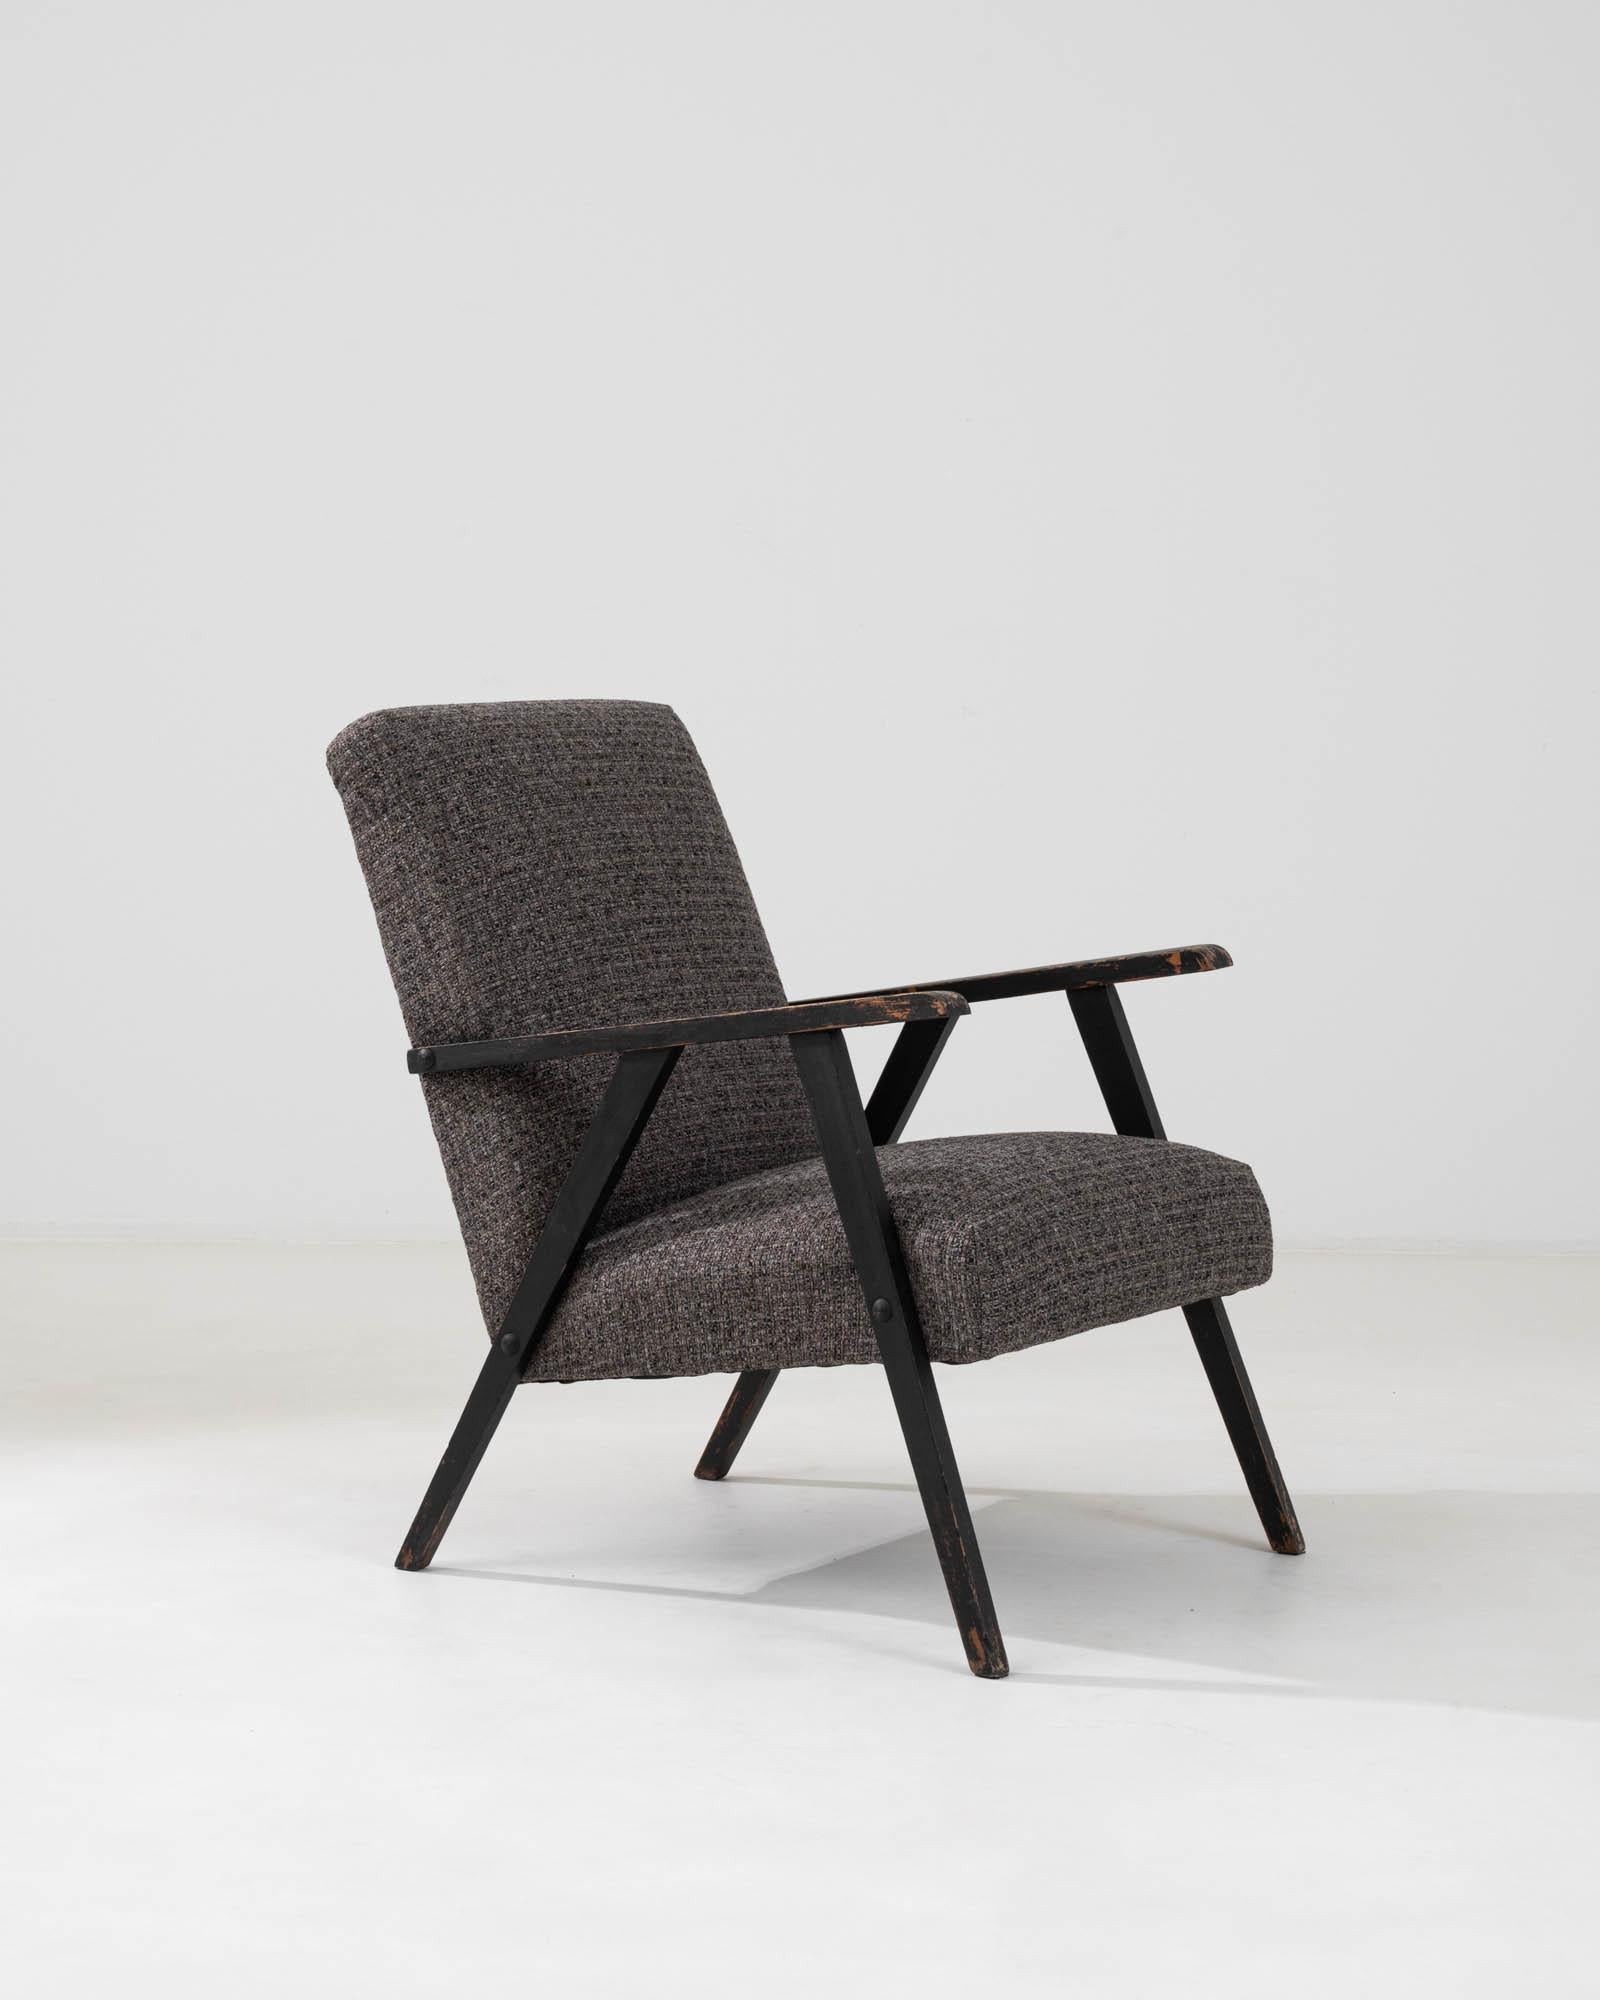 Dieser tschechische Polstersessel aus den 1960er Jahren verkörpert mit seiner strukturierten Polsterung in gedeckten Erdtönen das Wesen des Vintage-Appeals. Das auffallend schlichte und funktionale Design des Stuhls mit seinen klaren Linien und dem